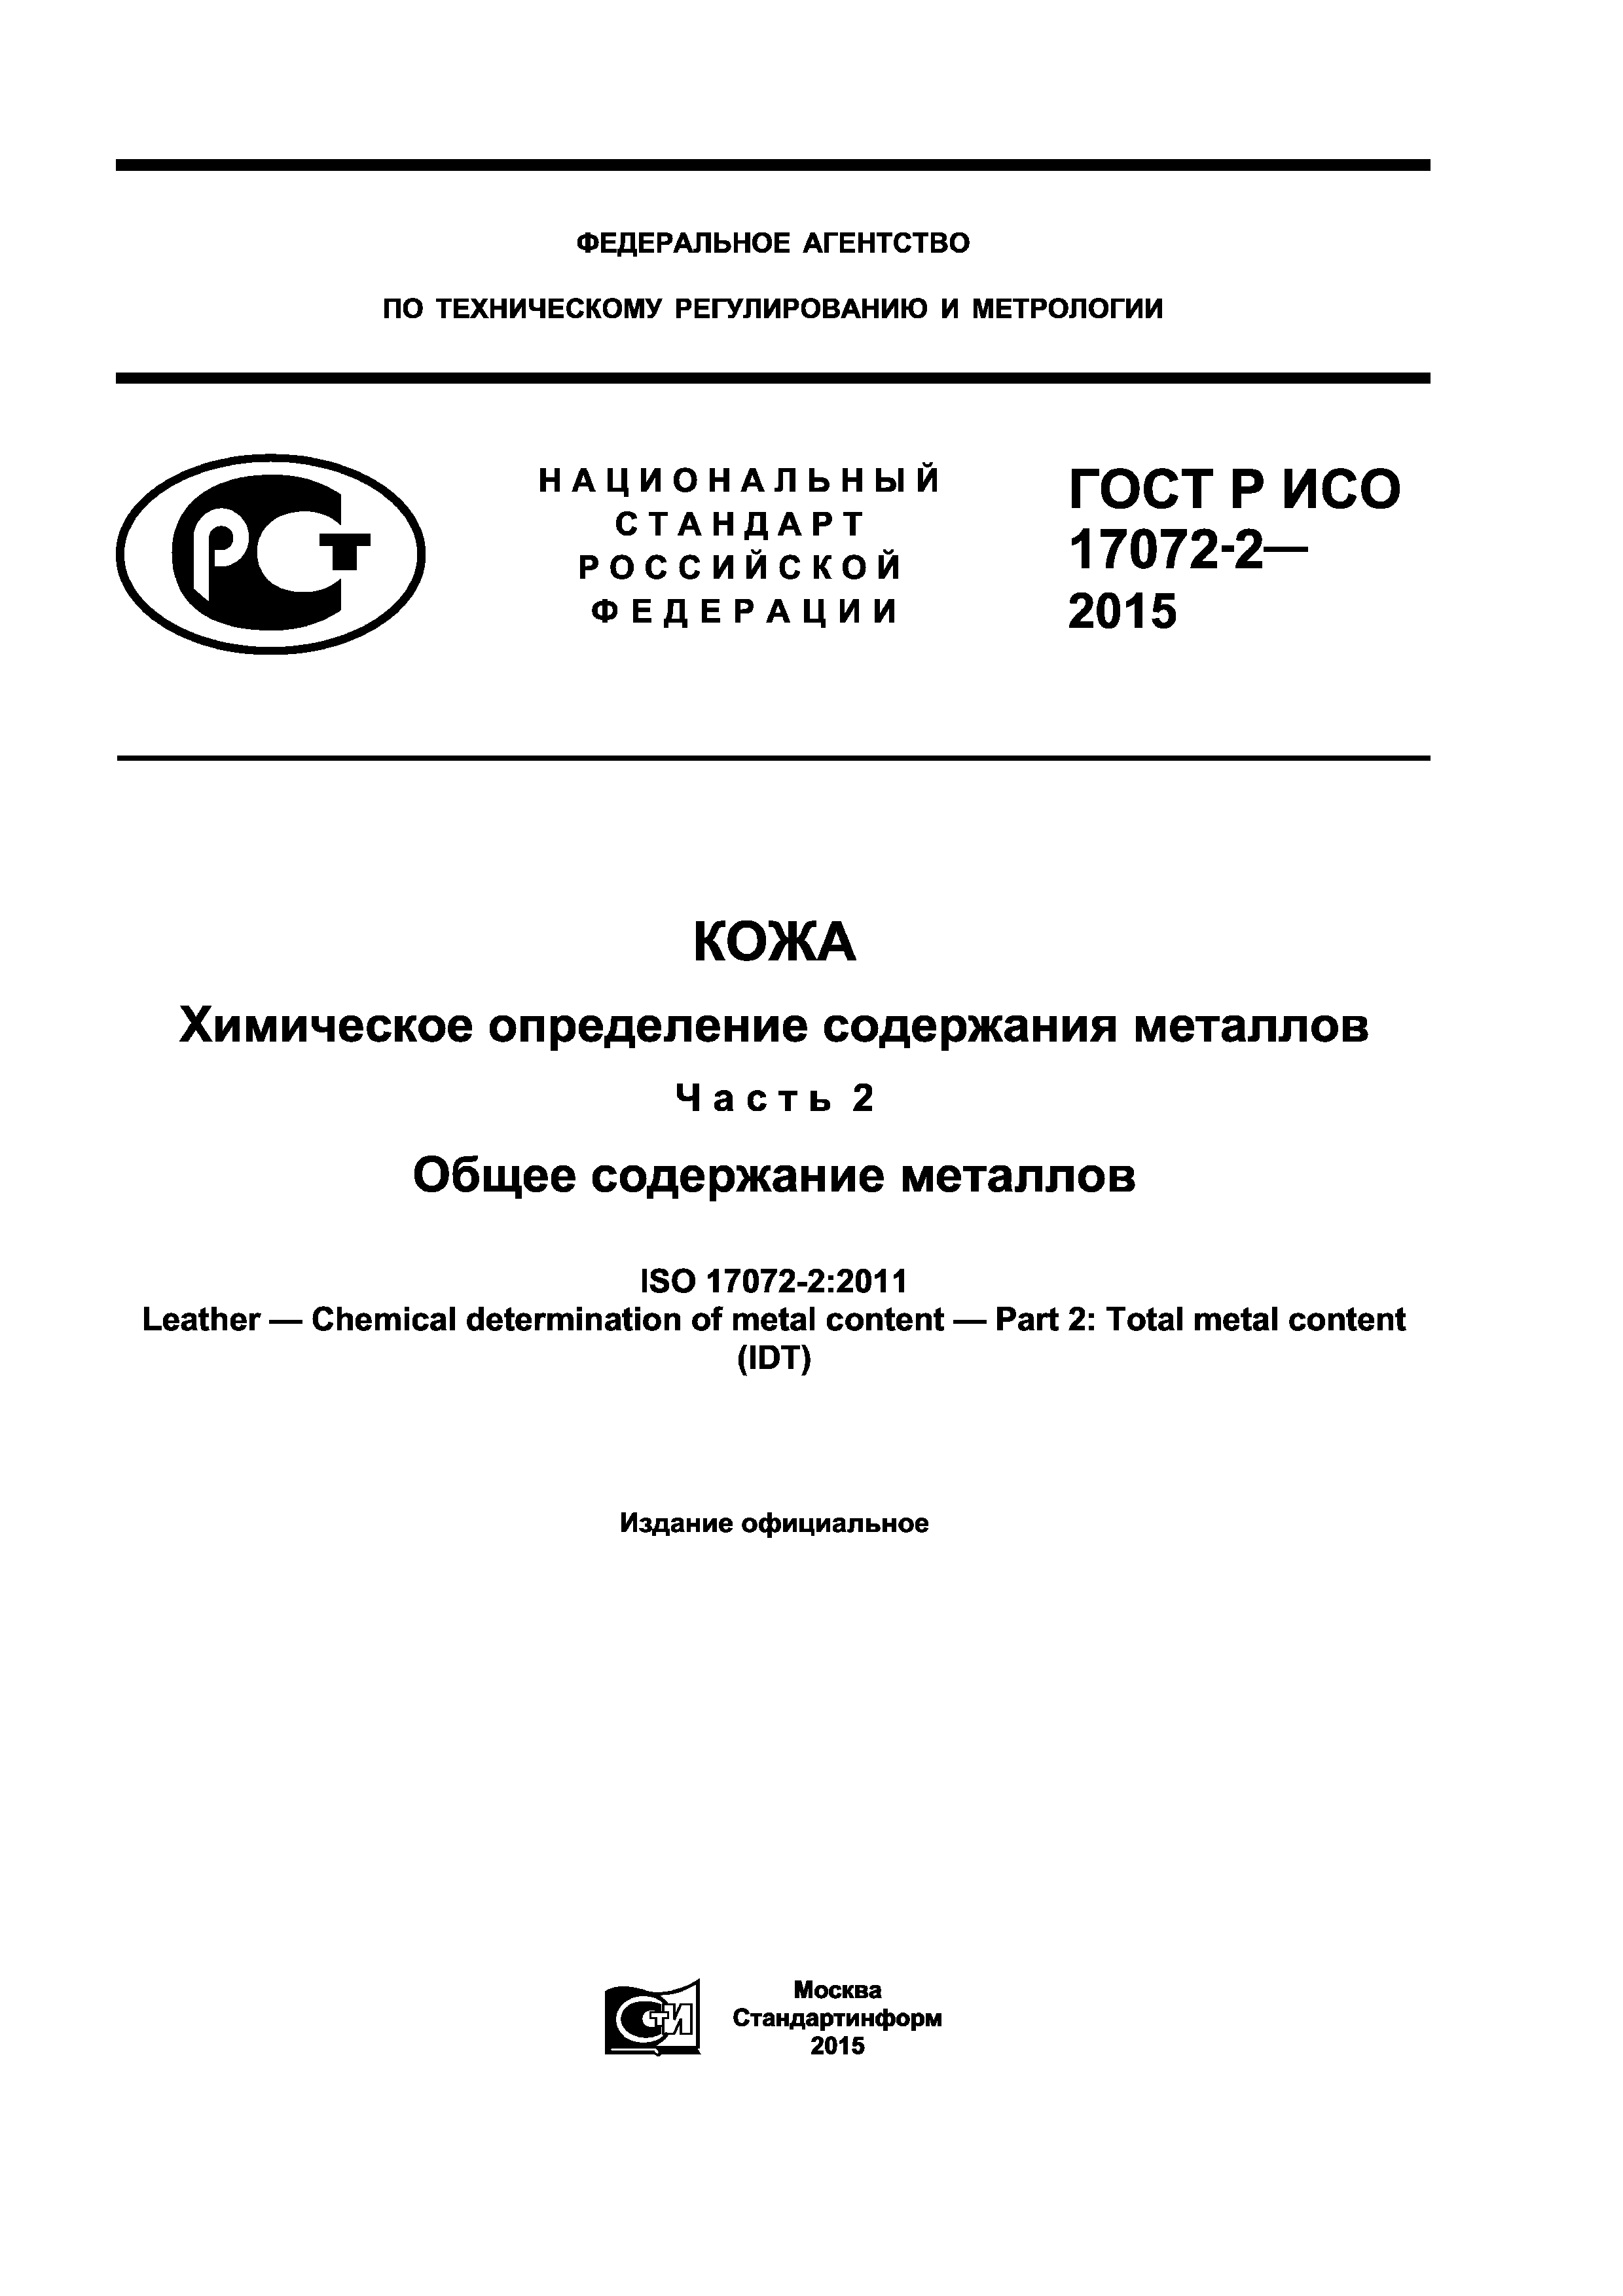 ГОСТ Р ИСО 17072-2-2015